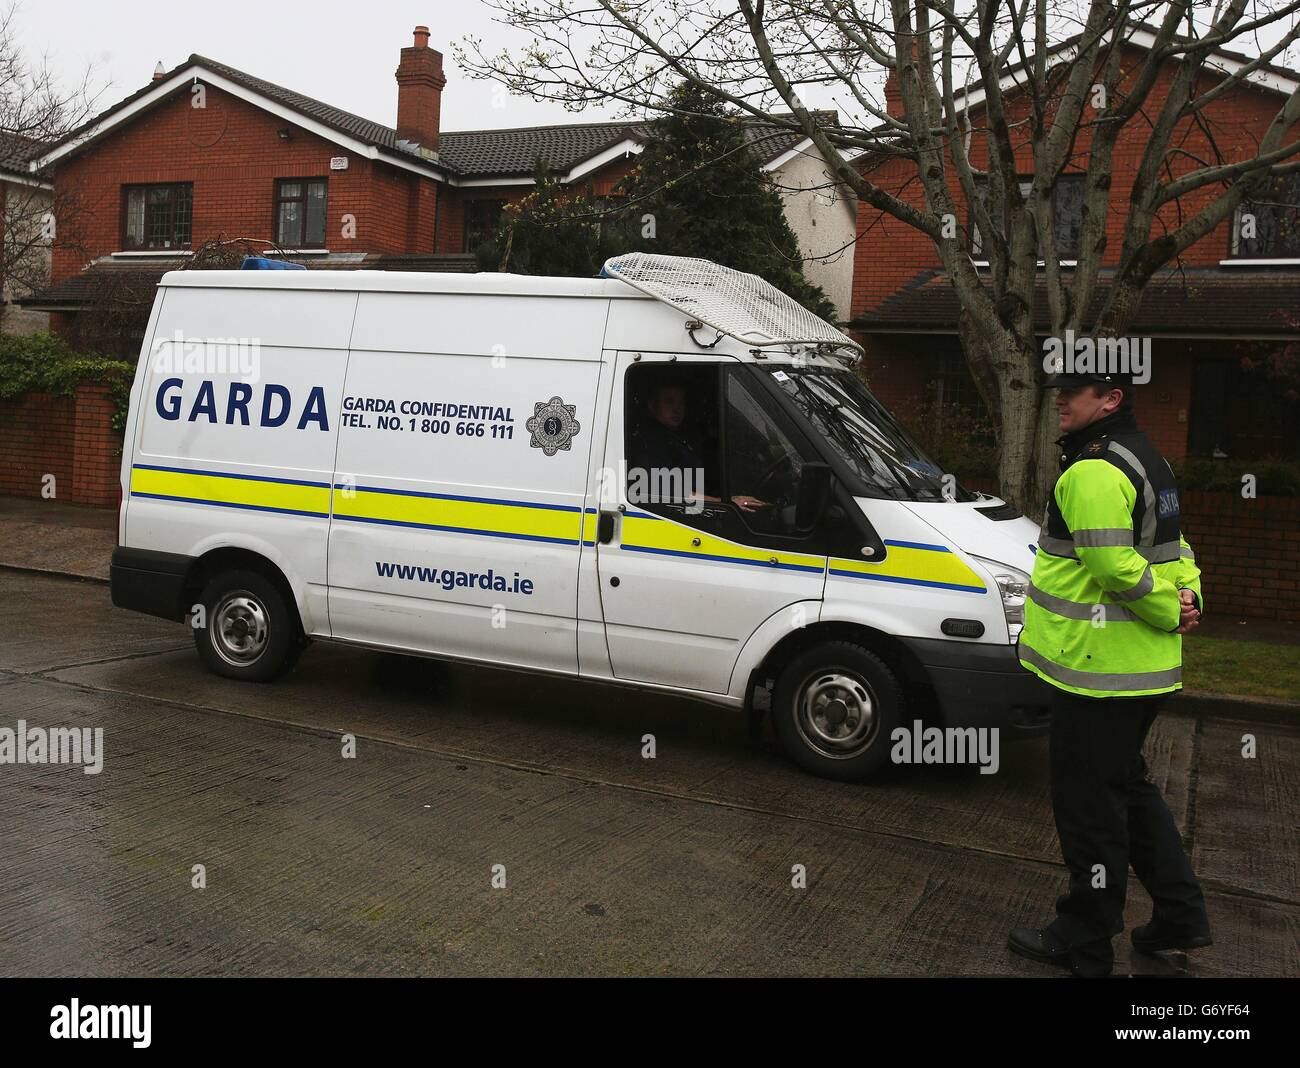 Miembros de un Garda fuera de la casa del ministro de Justicia de Irlanda Alan Shatter en Dublín, después de que expertos en bombas del Ejército fueron llamados a hacer frente a una amenaza química antisemita. Foto de stock